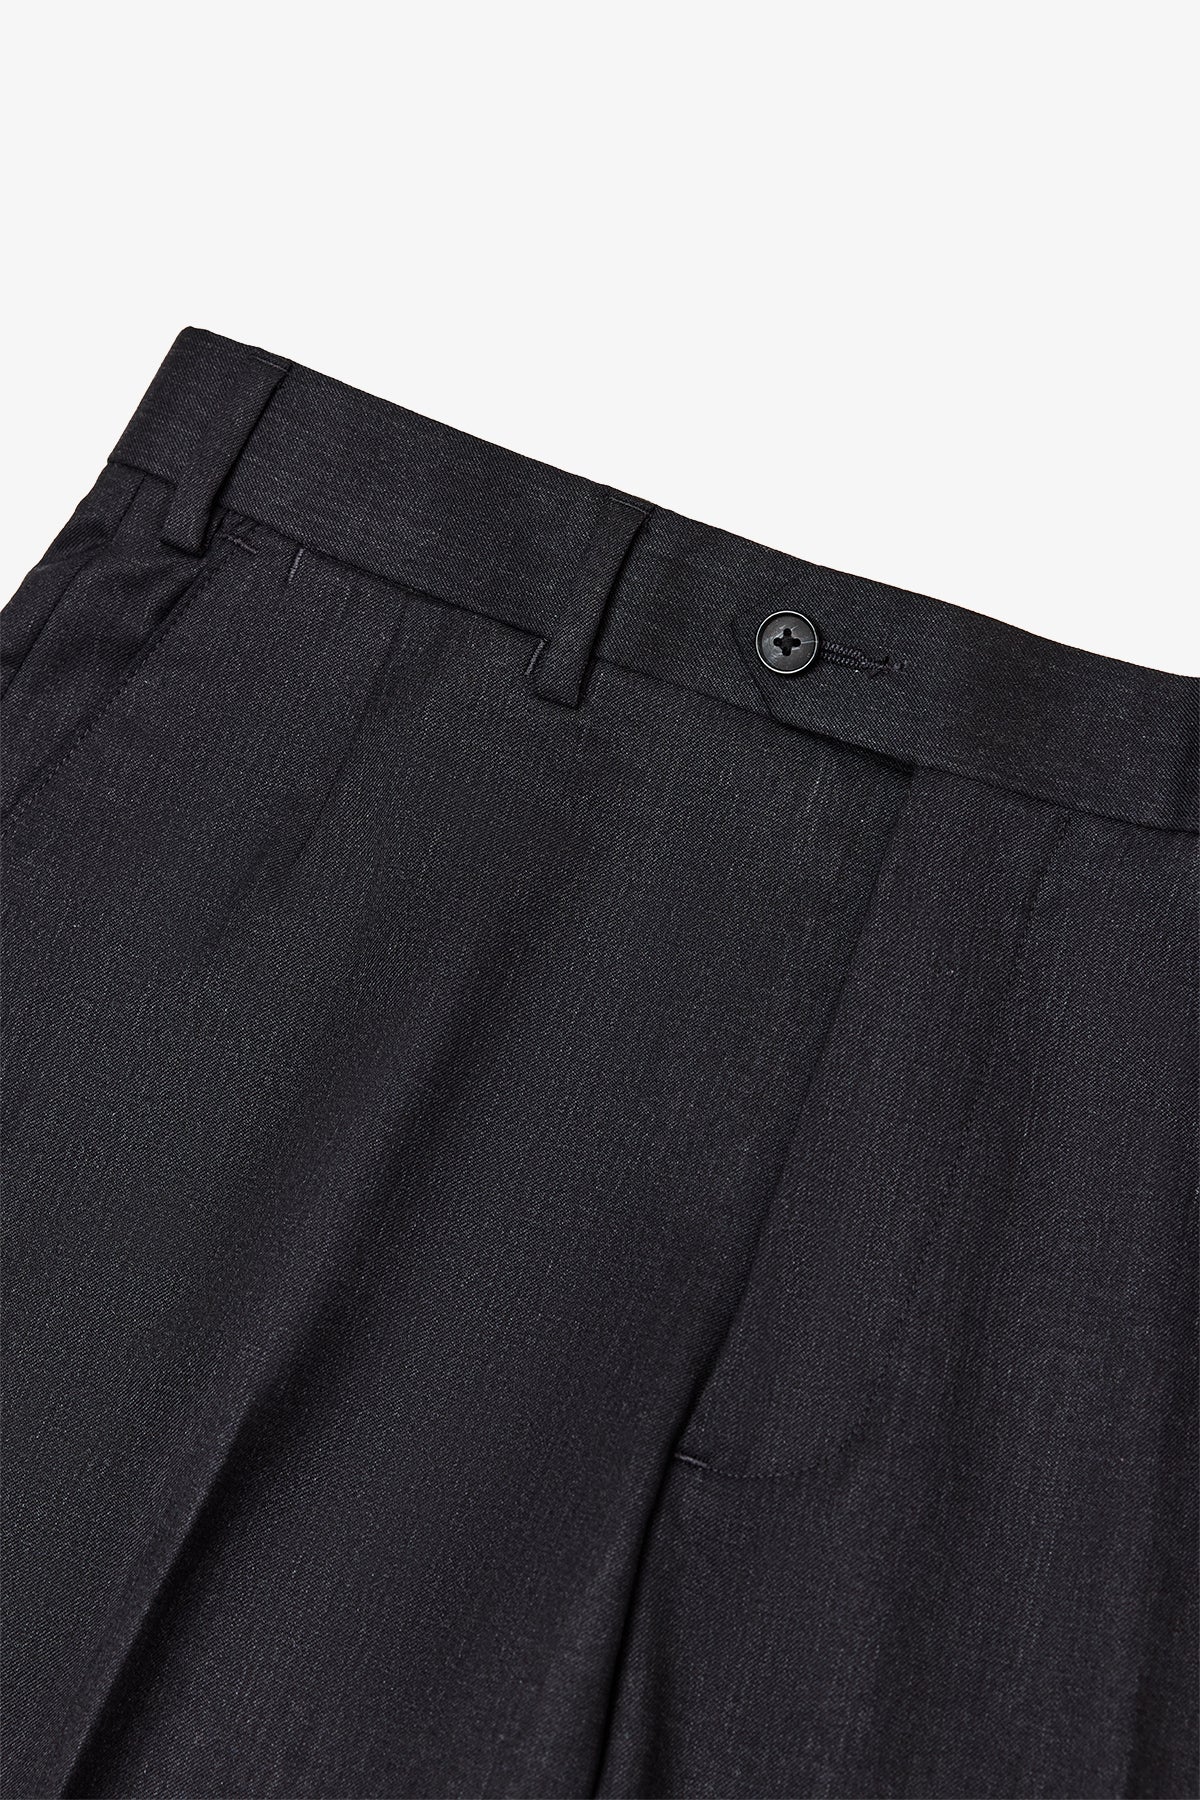 Adler - Dark Grey Trouser